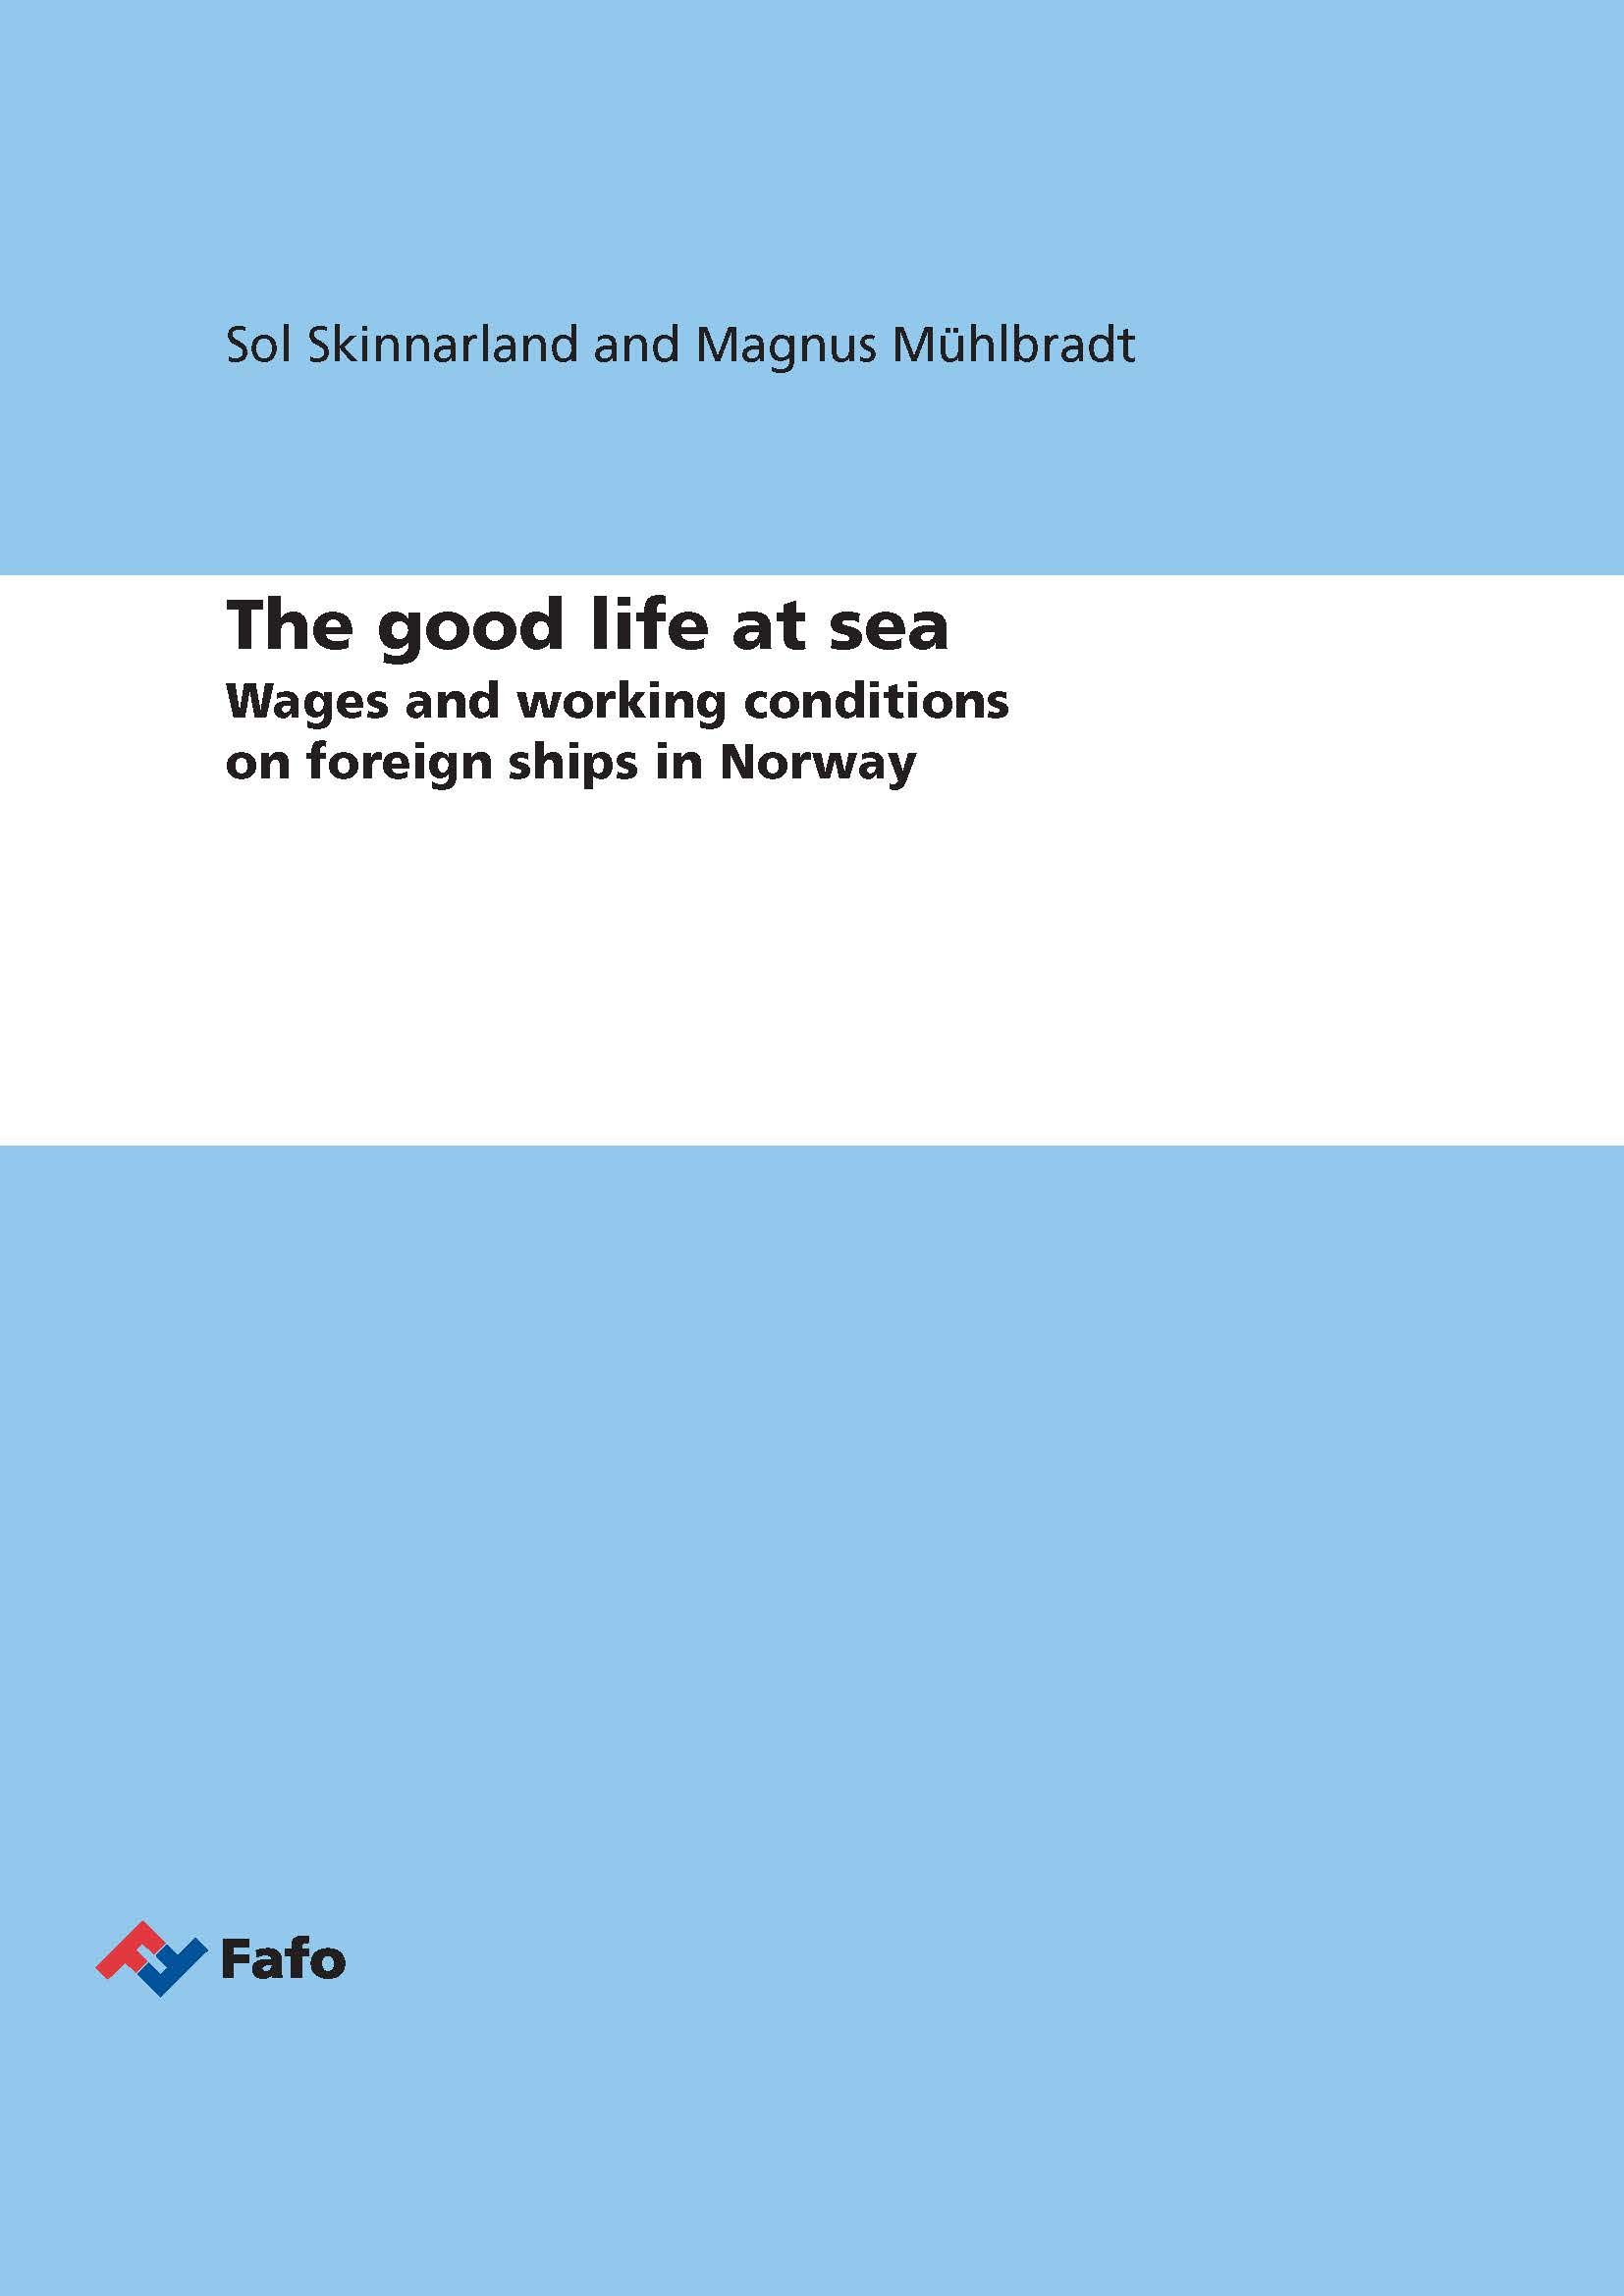 The good life at sea